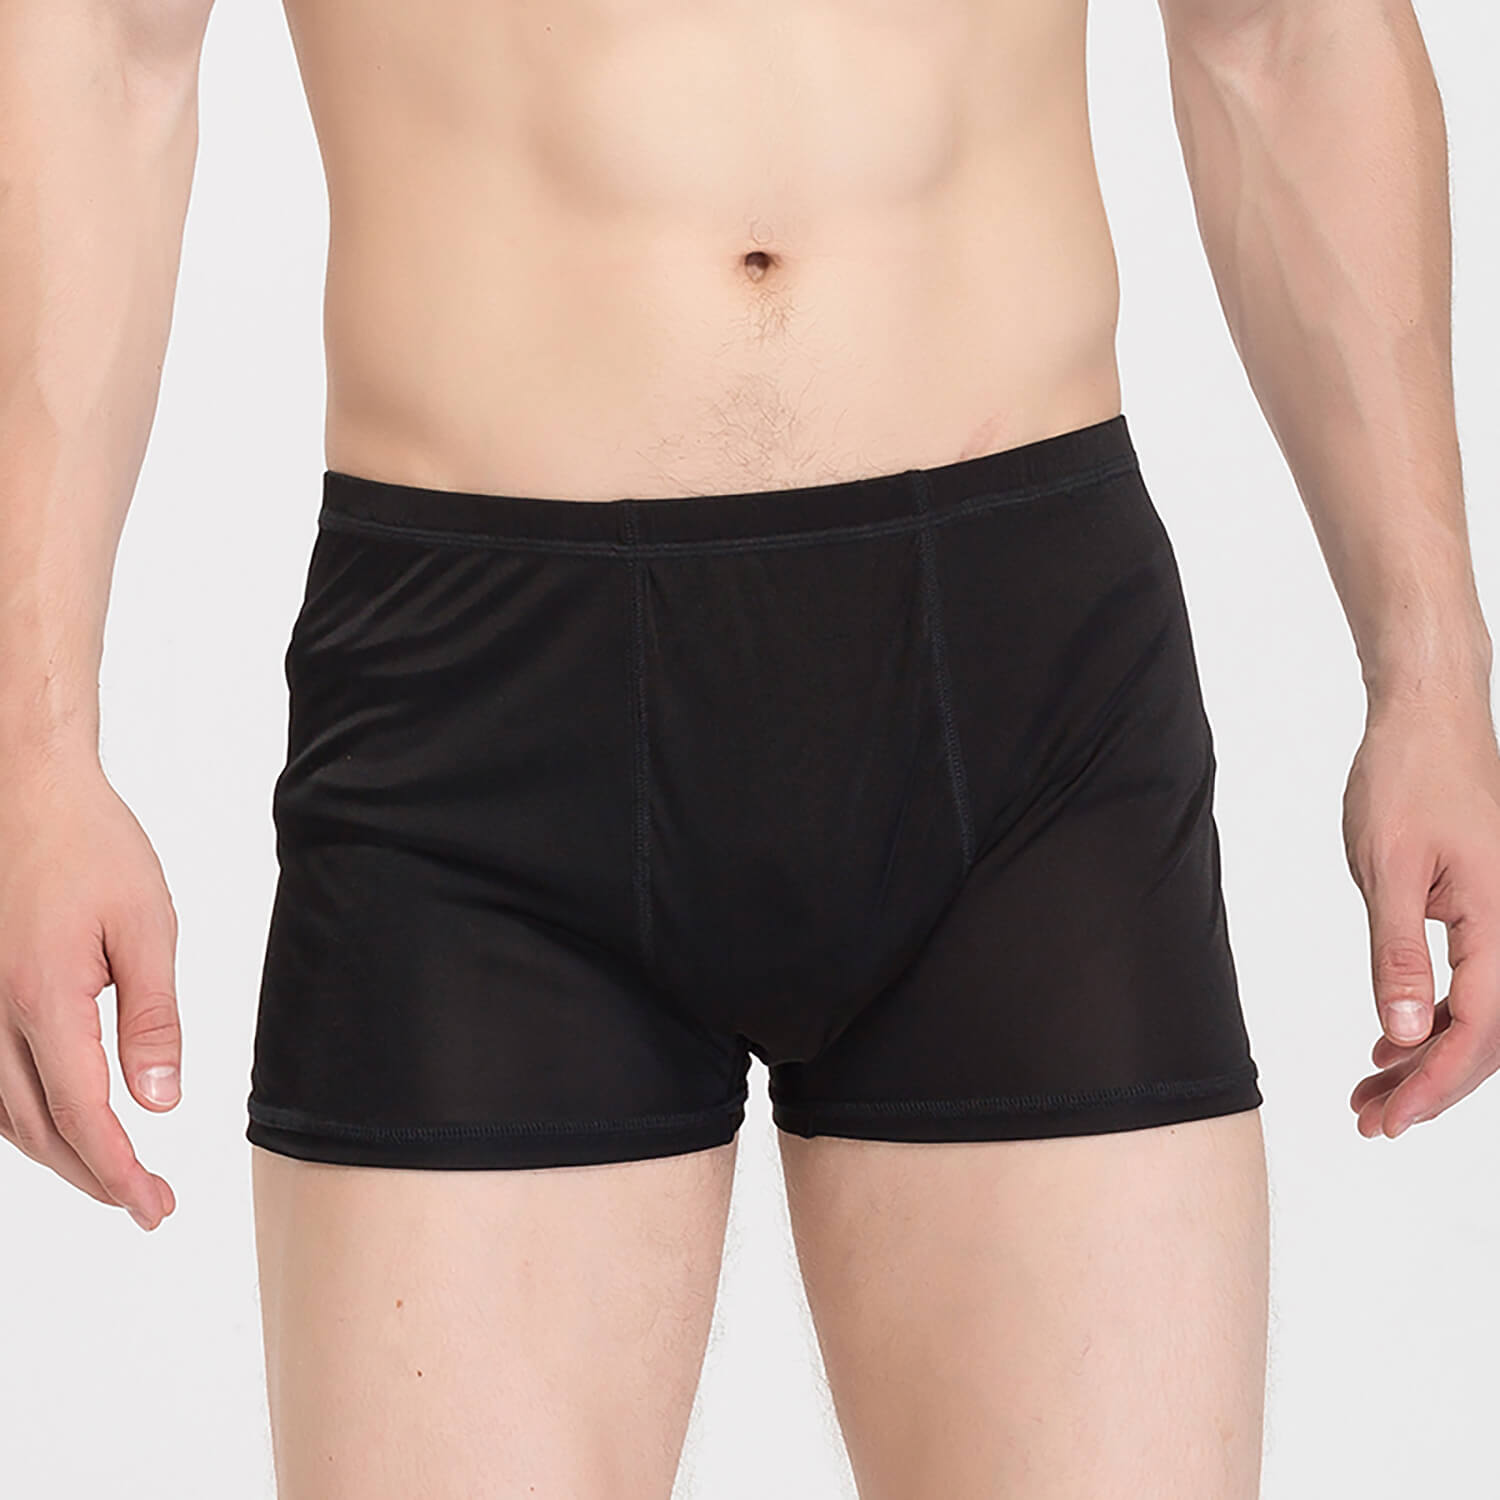 Men's Mulberry Silk Knitted underwear Briefs Comfy Silk Boxer - slipintosoft